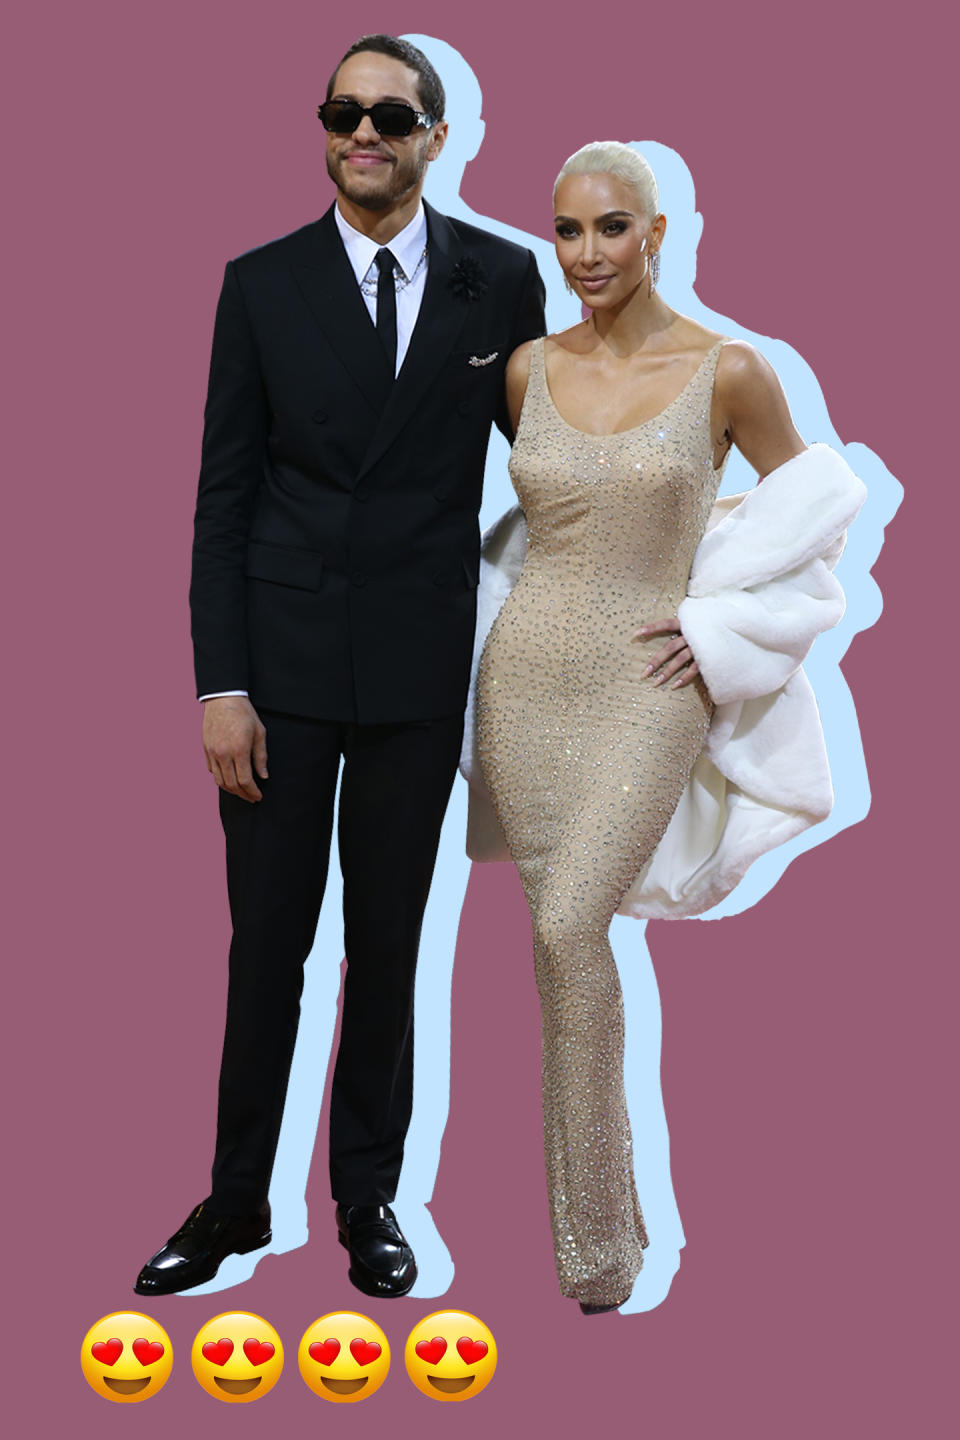 Pete Davidson and Kim Kardashian - Credit: Lexie Moreland/WWD